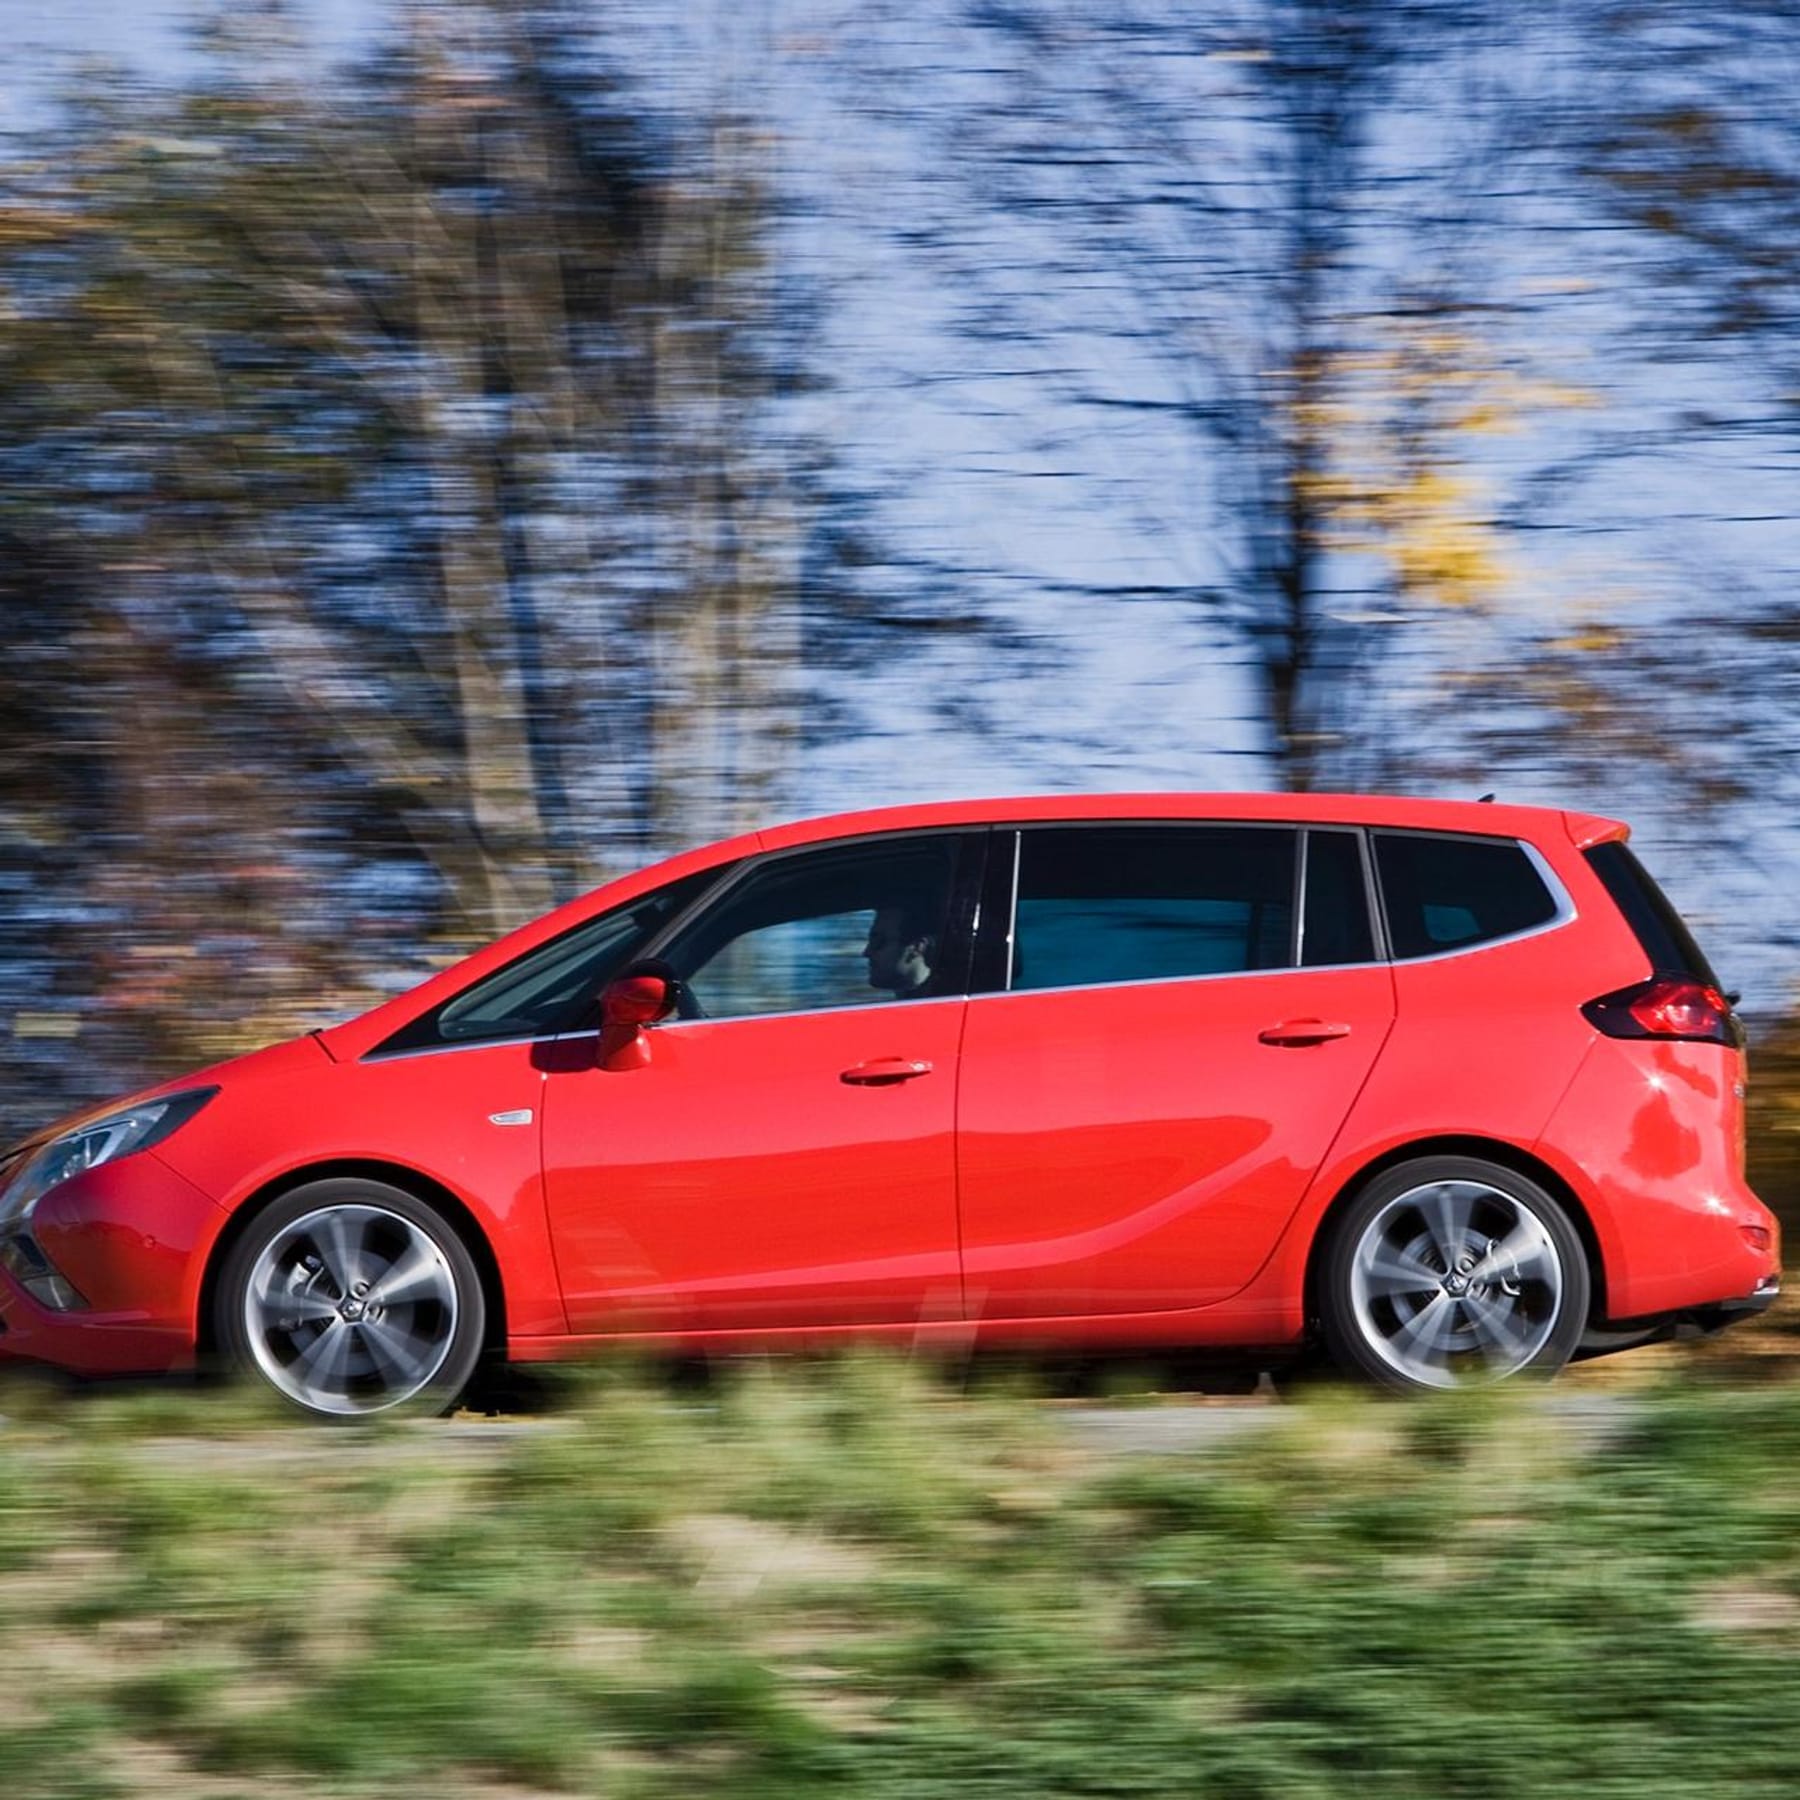 Opel Zafira C: Familienvan mit gutem Fahrwerk und Ölproblem